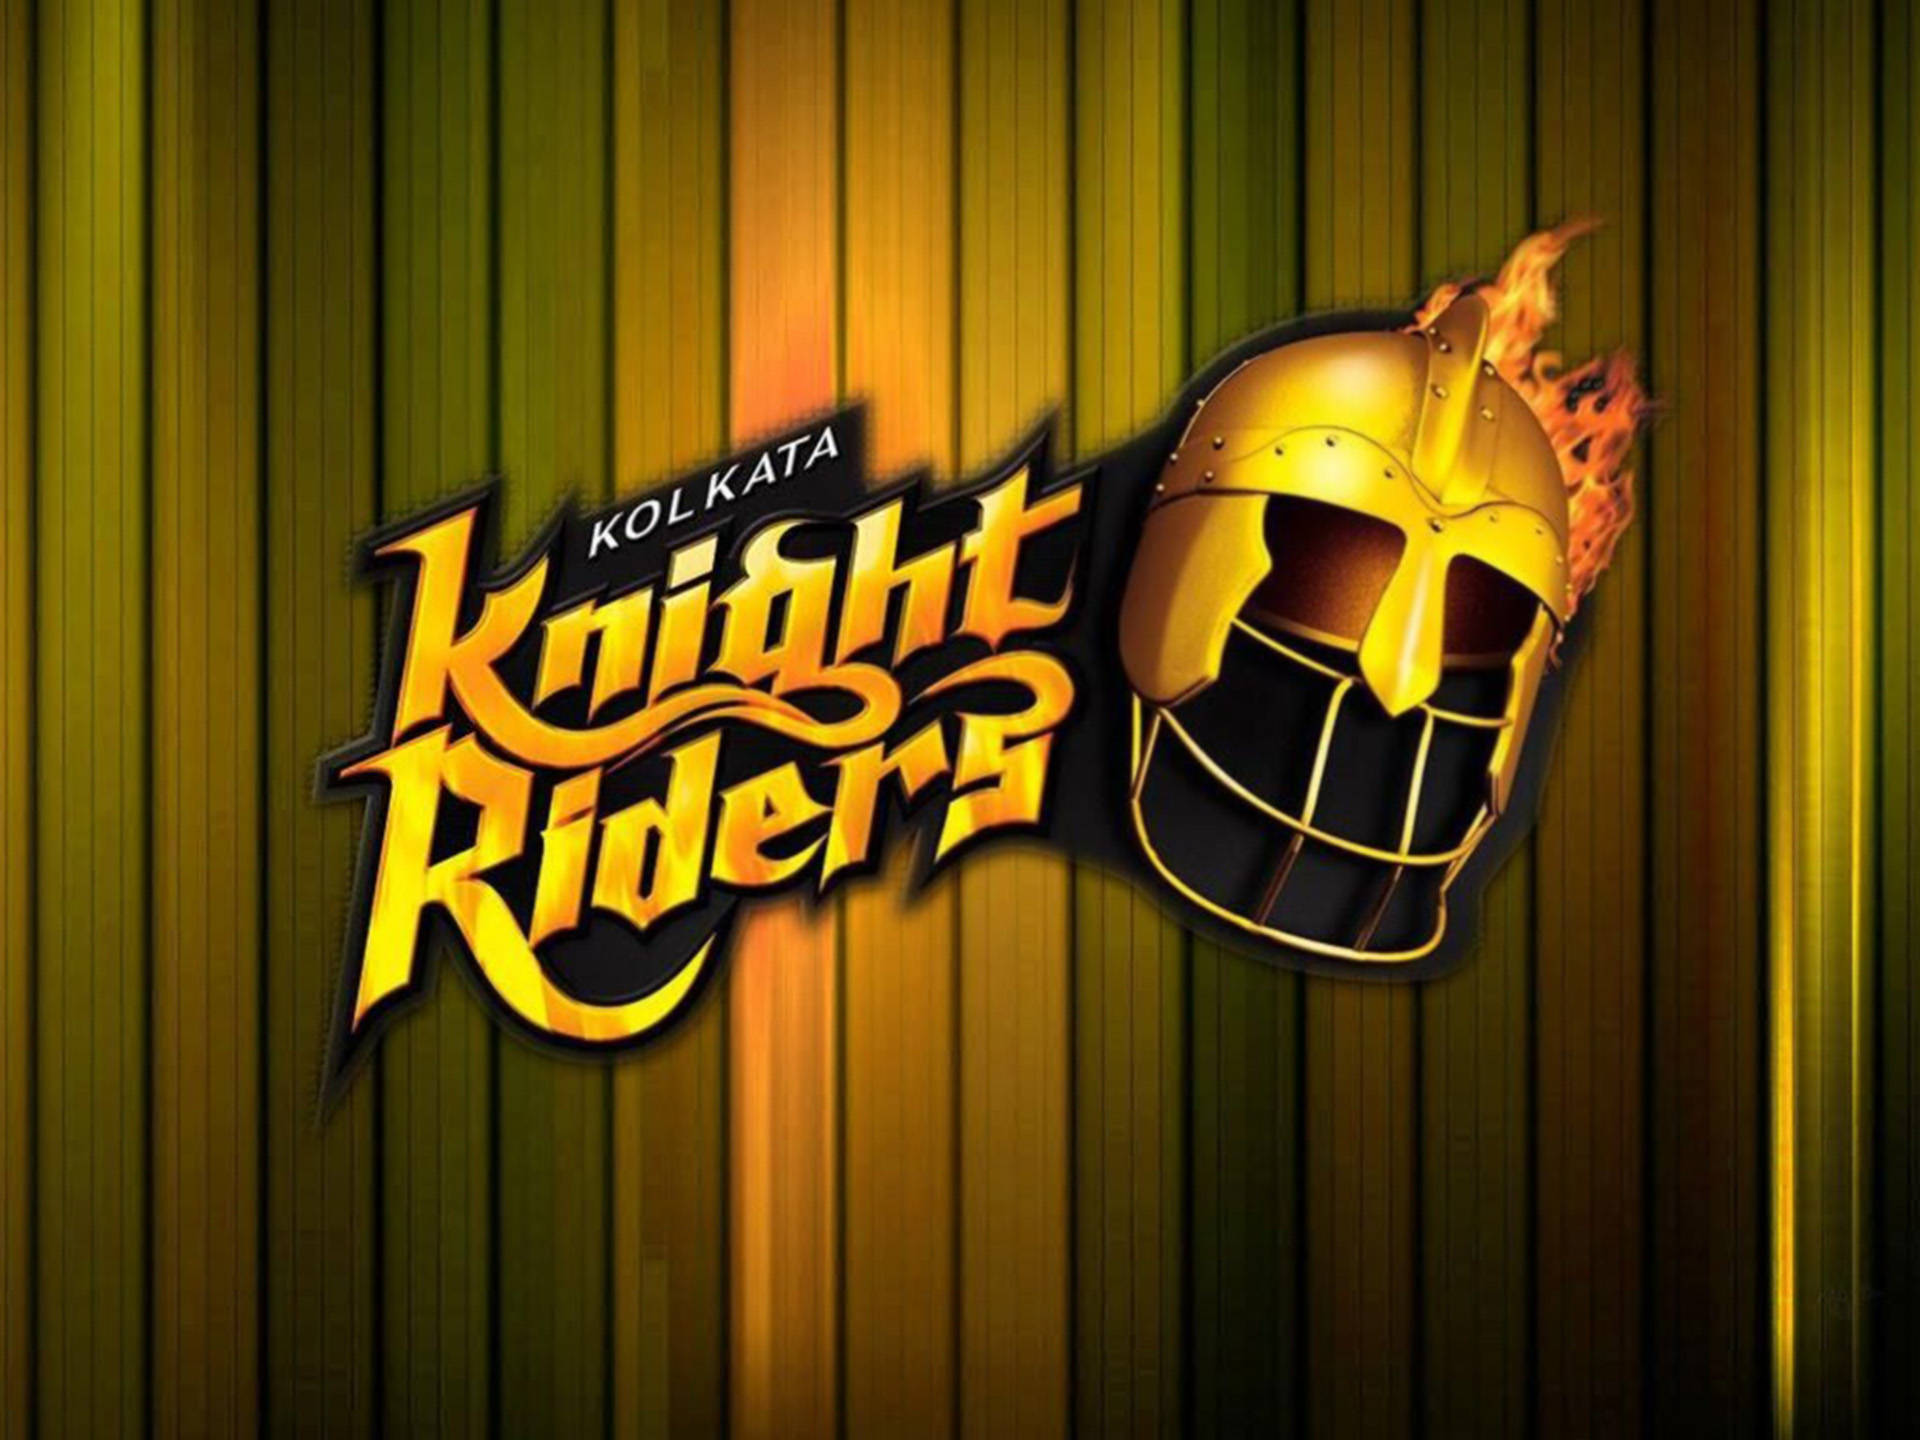 Kolkata Knight Riders Wood Texture Wallpaper